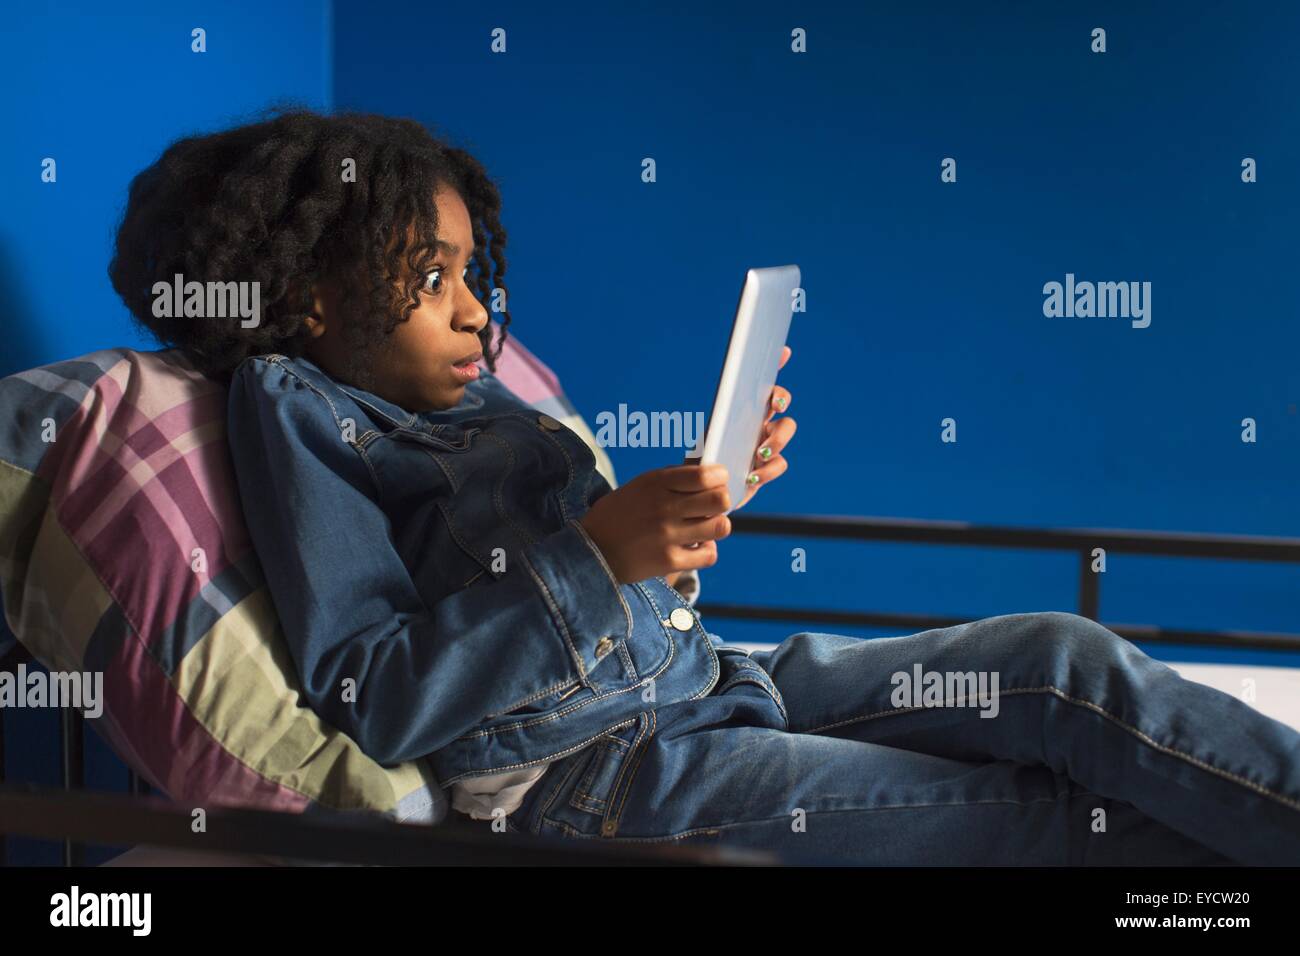 Girl posing for digital tablet selfie on bunkbed Stock Photo